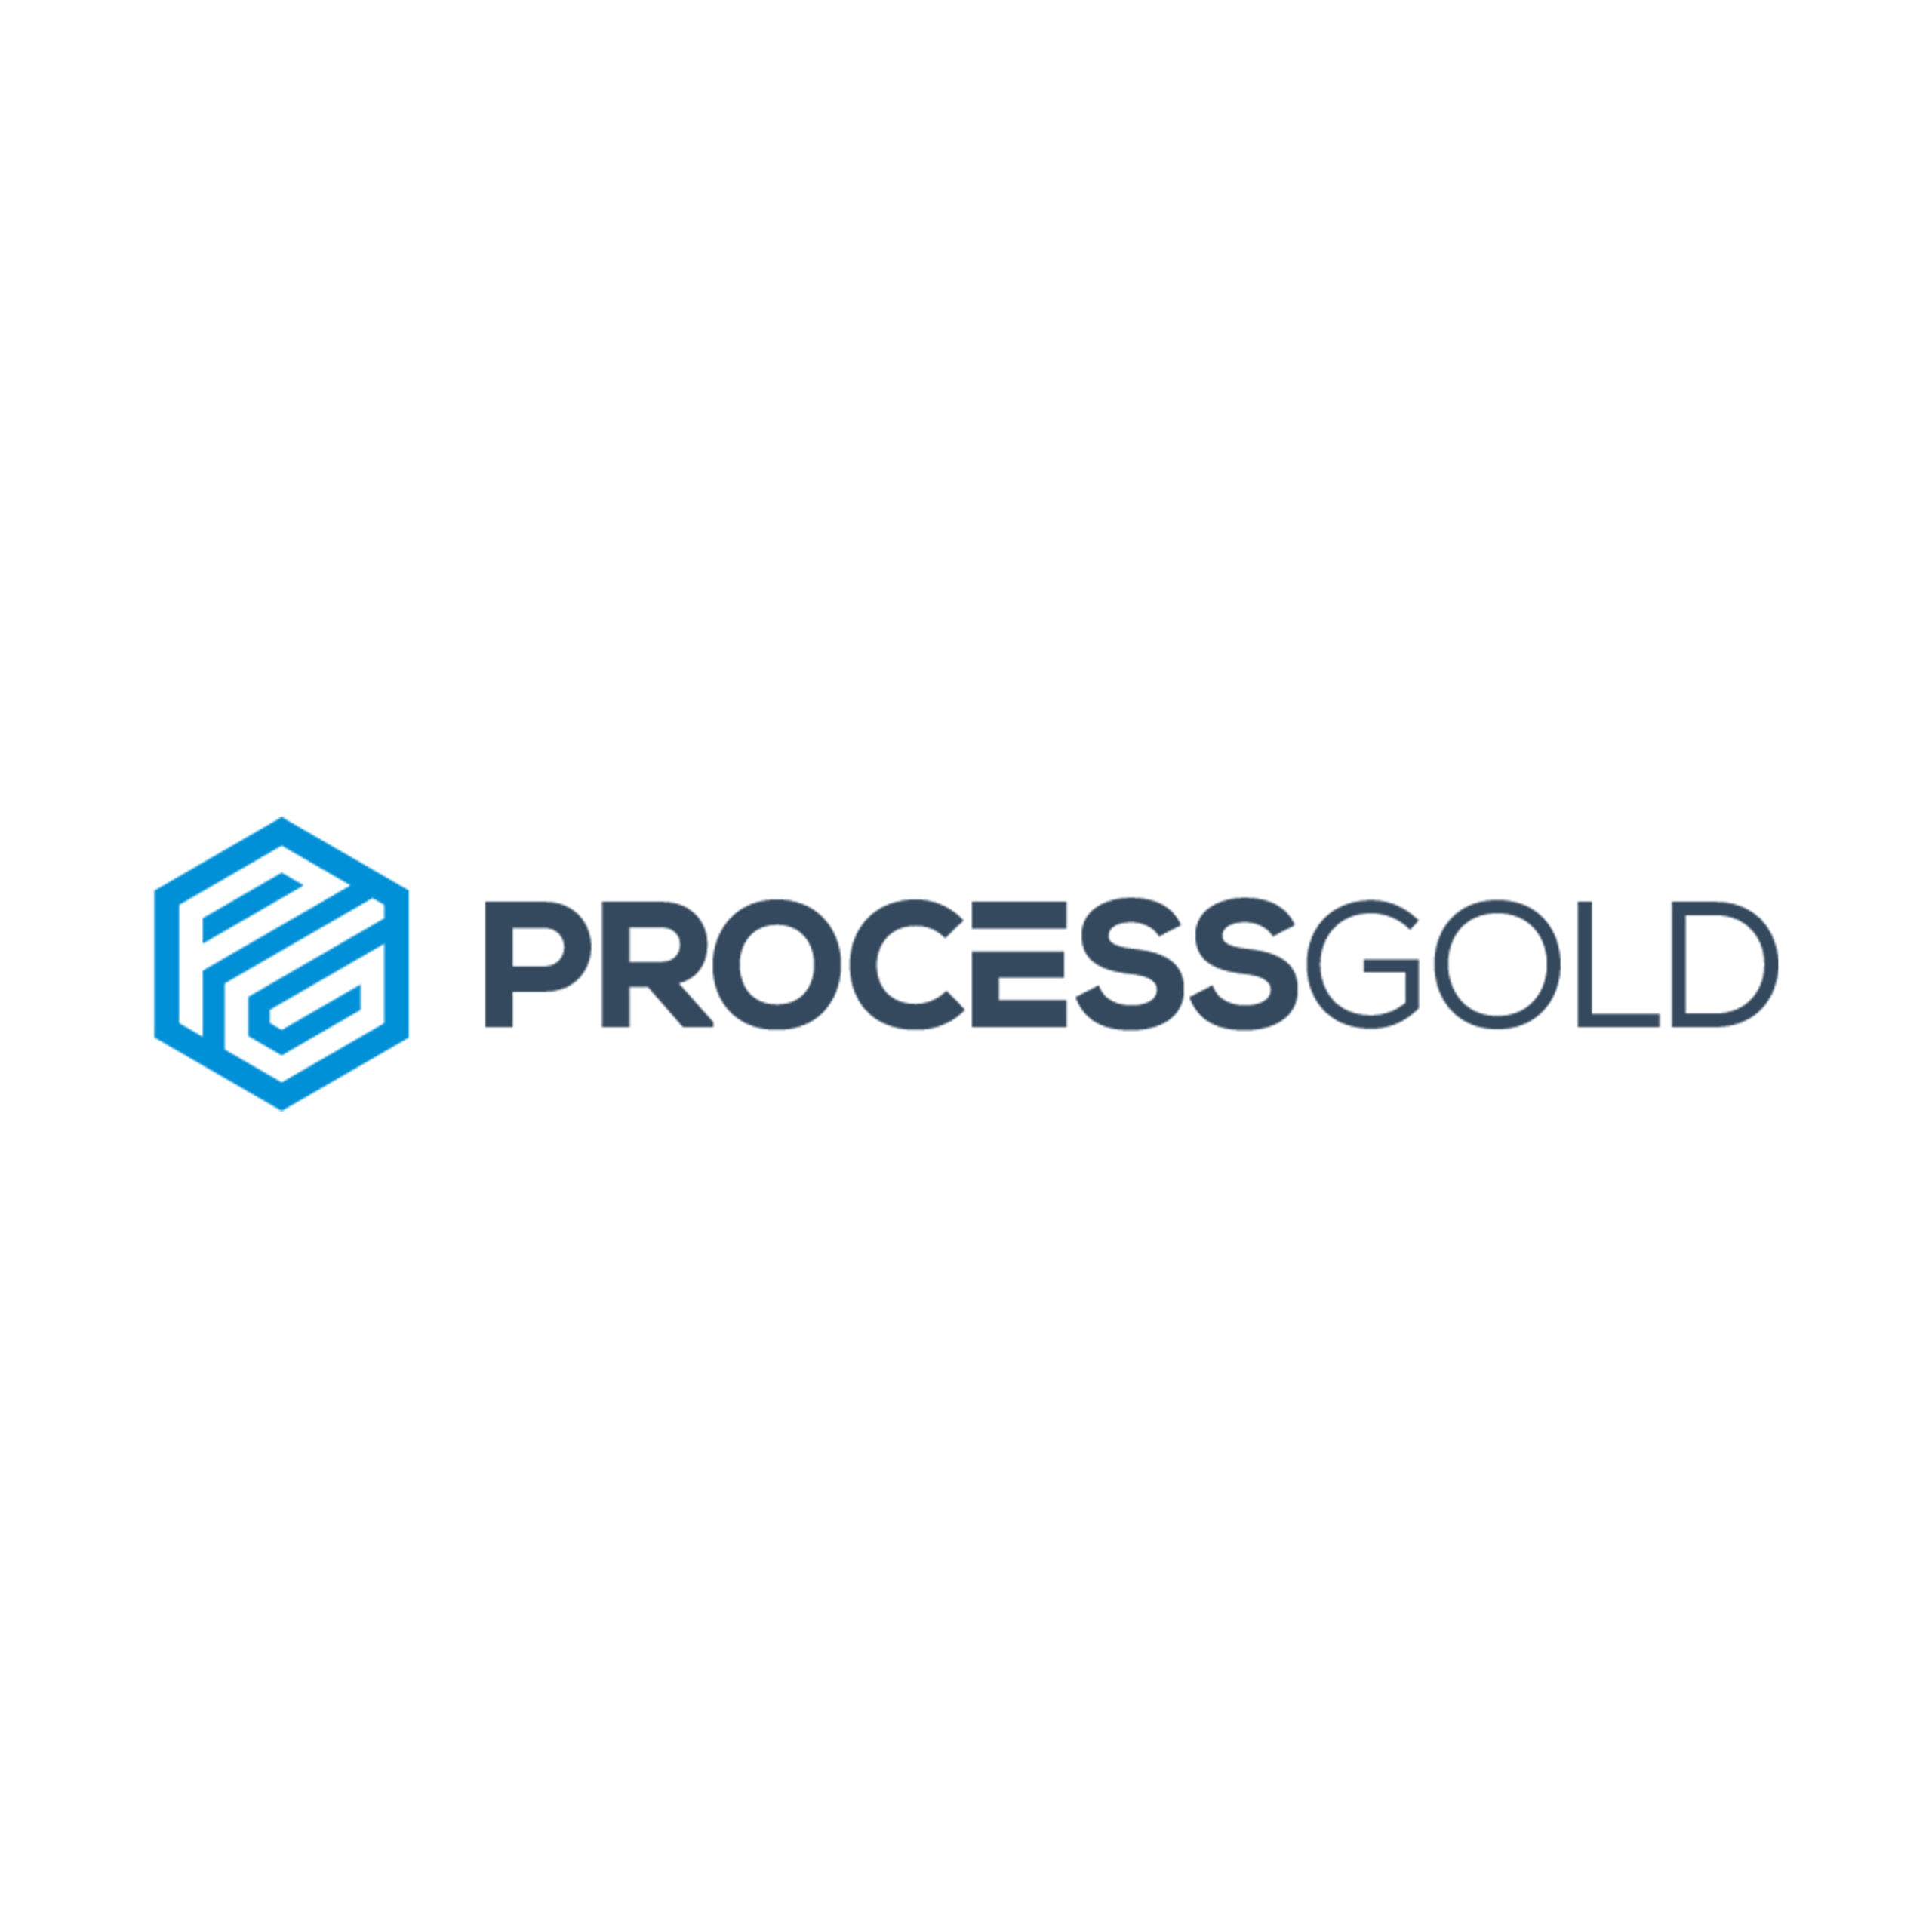 ProcessGold